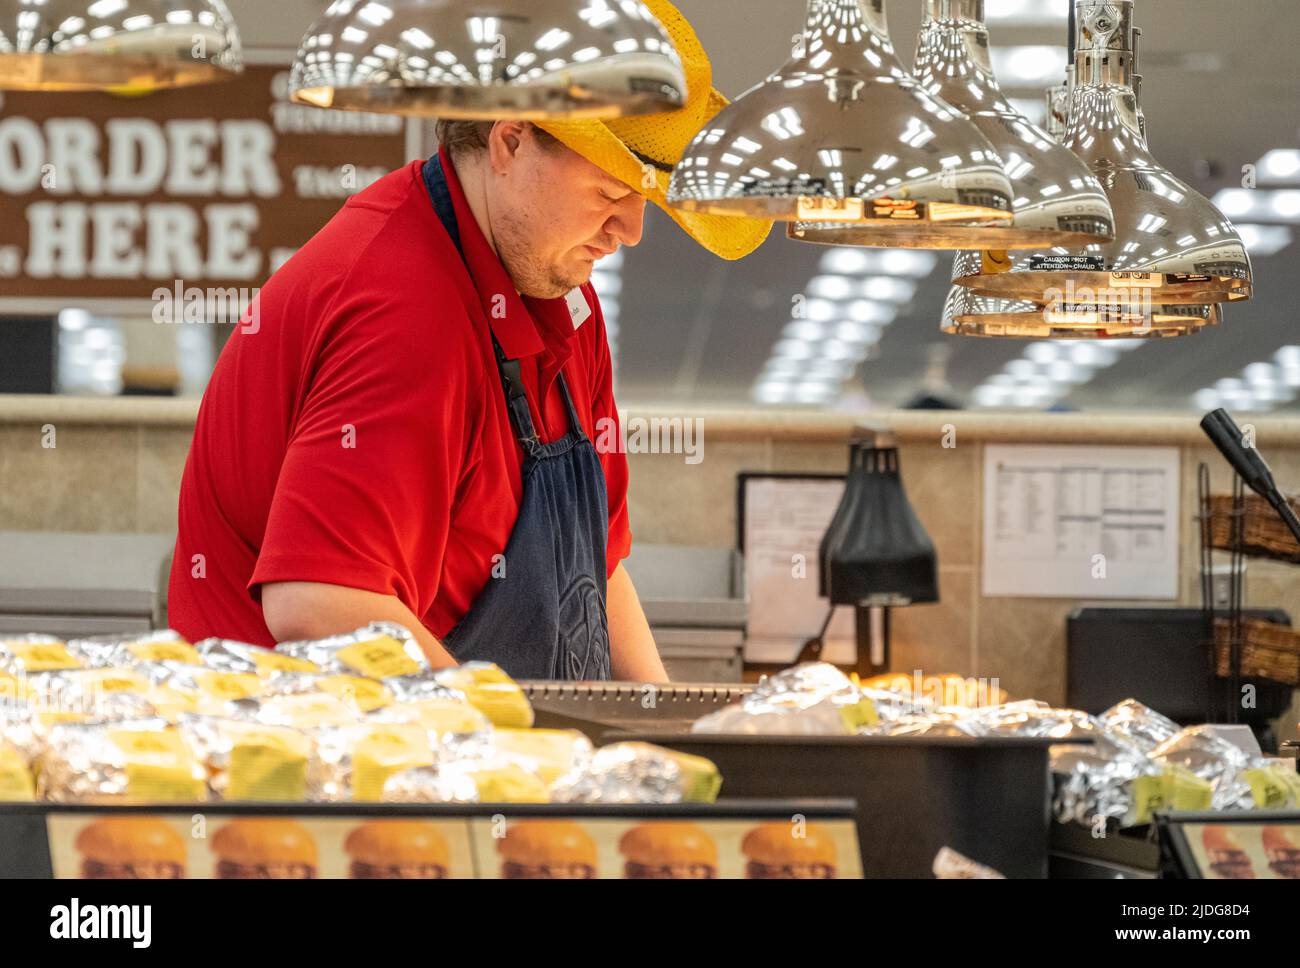 Un employé de Buc-ees prépare du pain de bœuf et des sandwichs de porc au centre de voyage Buc-ees à Leeds, Alabama, juste à l'extérieur de Birmingham. (ÉTATS-UNIS) Banque D'Images